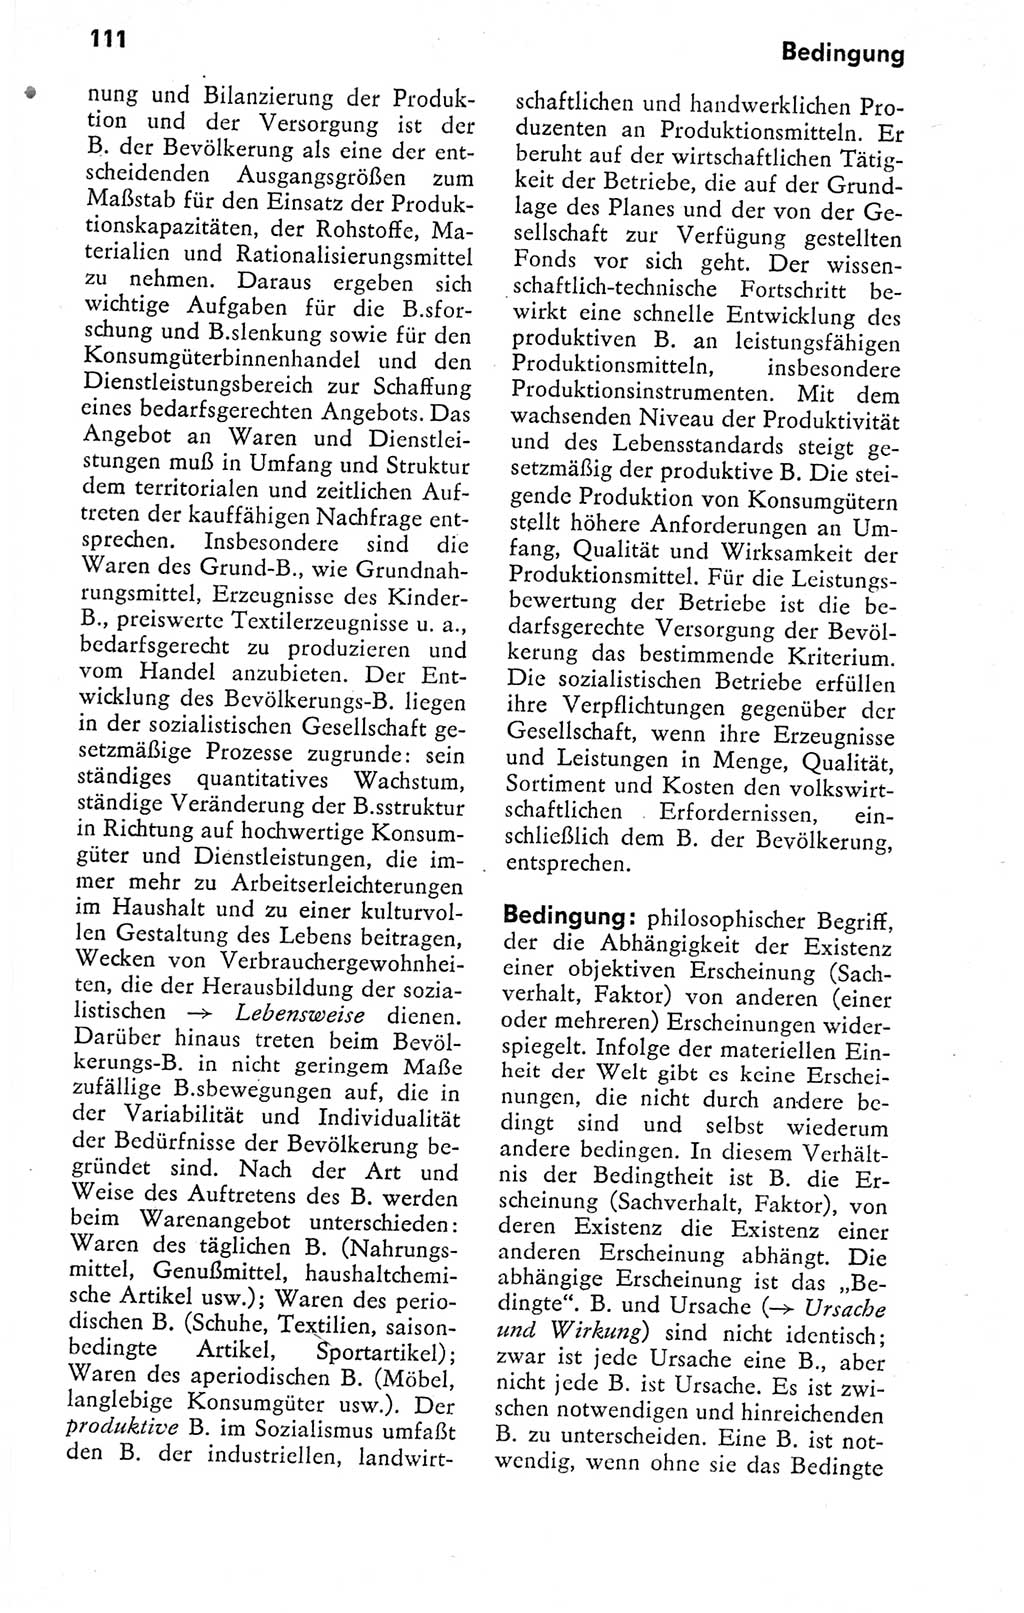 Kleines politisches Wörterbuch [Deutsche Demokratische Republik (DDR)] 1978, Seite 111 (Kl. pol. Wb. DDR 1978, S. 111)